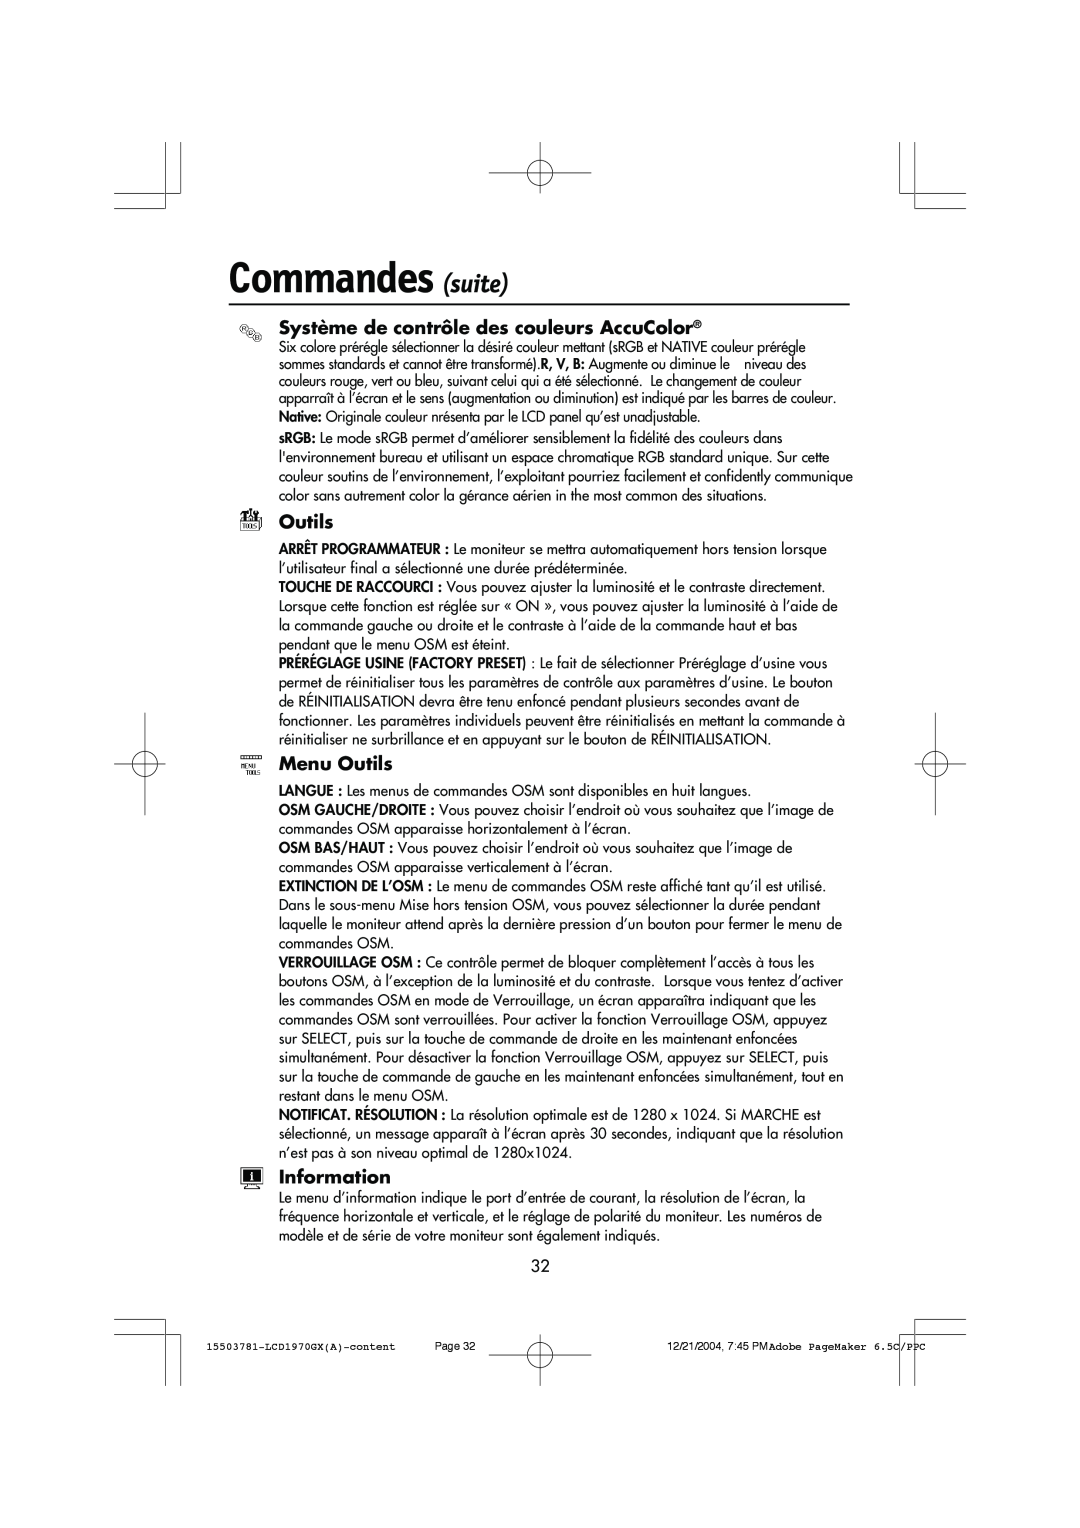 NEC LCD1970GX user manual Commandes suite, Système de contrôle des couleurs AccuColor, Menu Outils, Information 